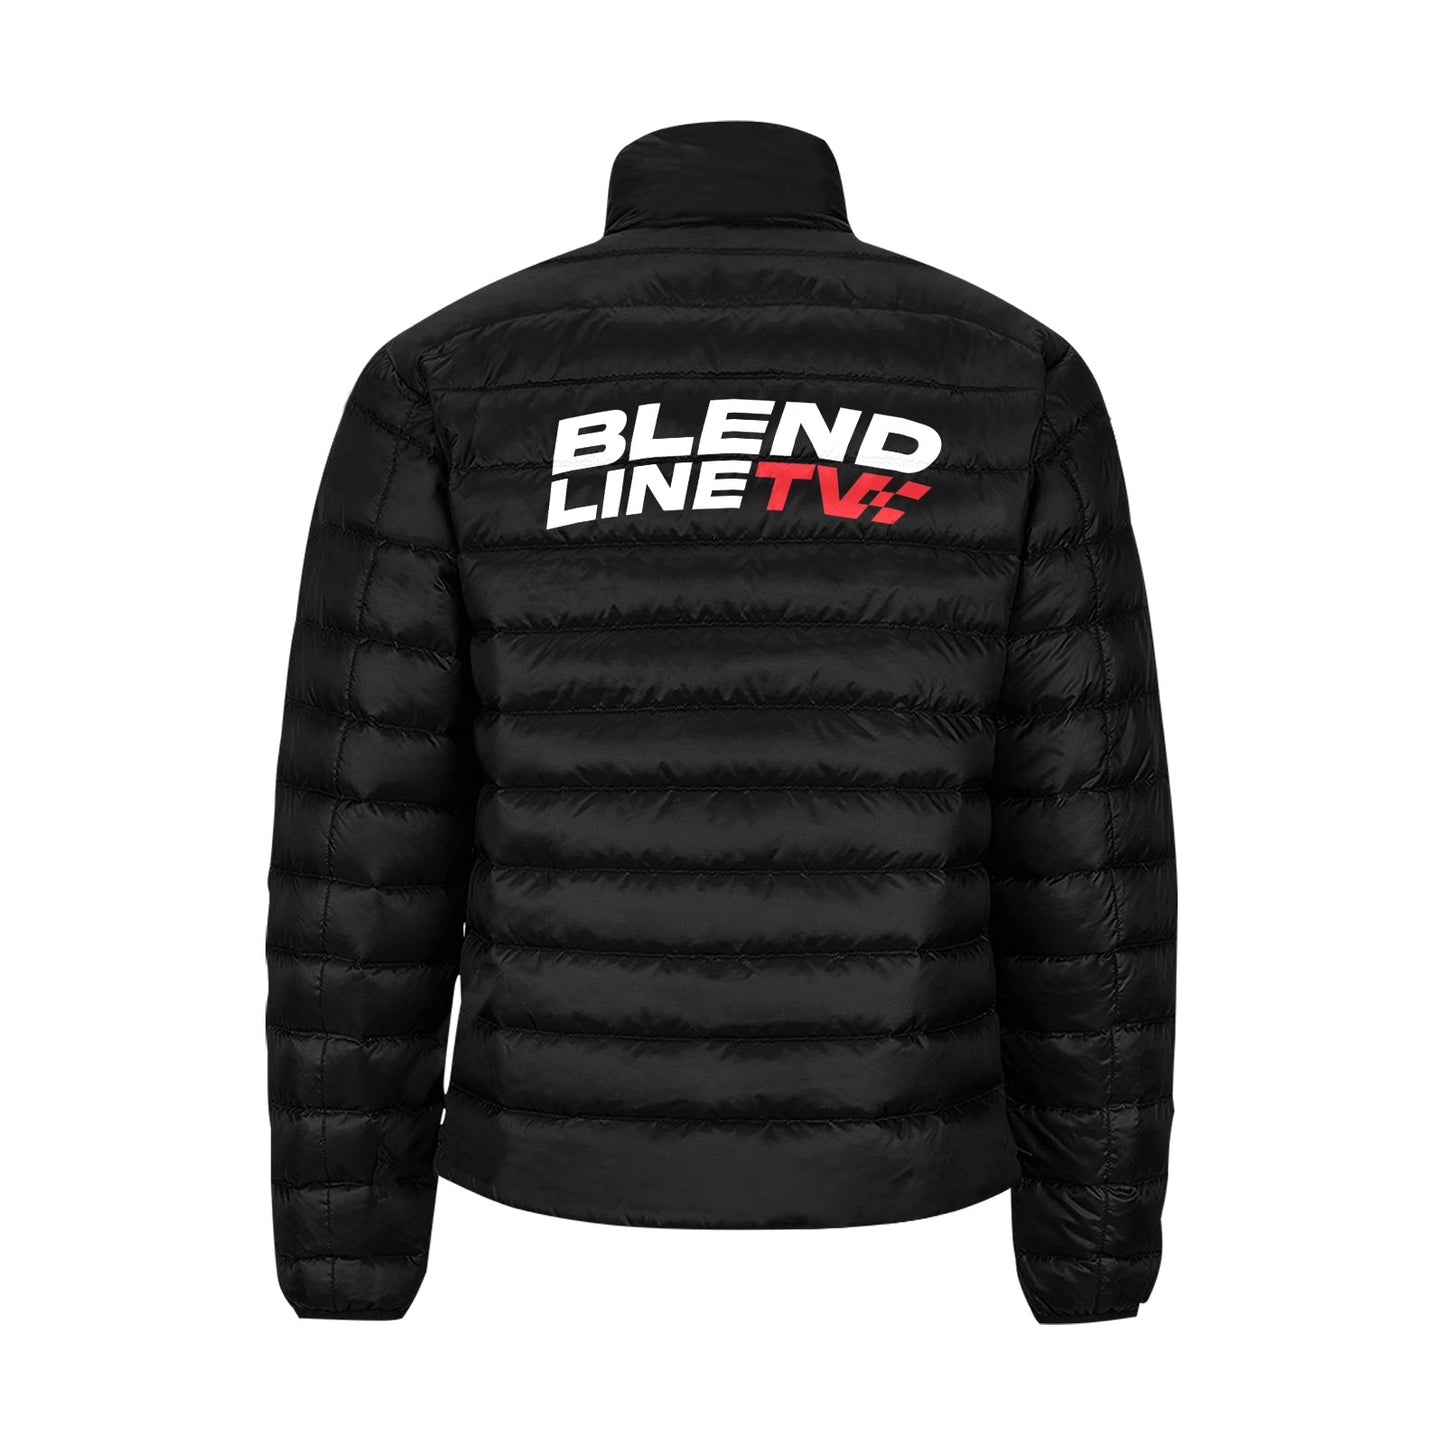 BLENDLINE TV quilted puffer jacket - carbon